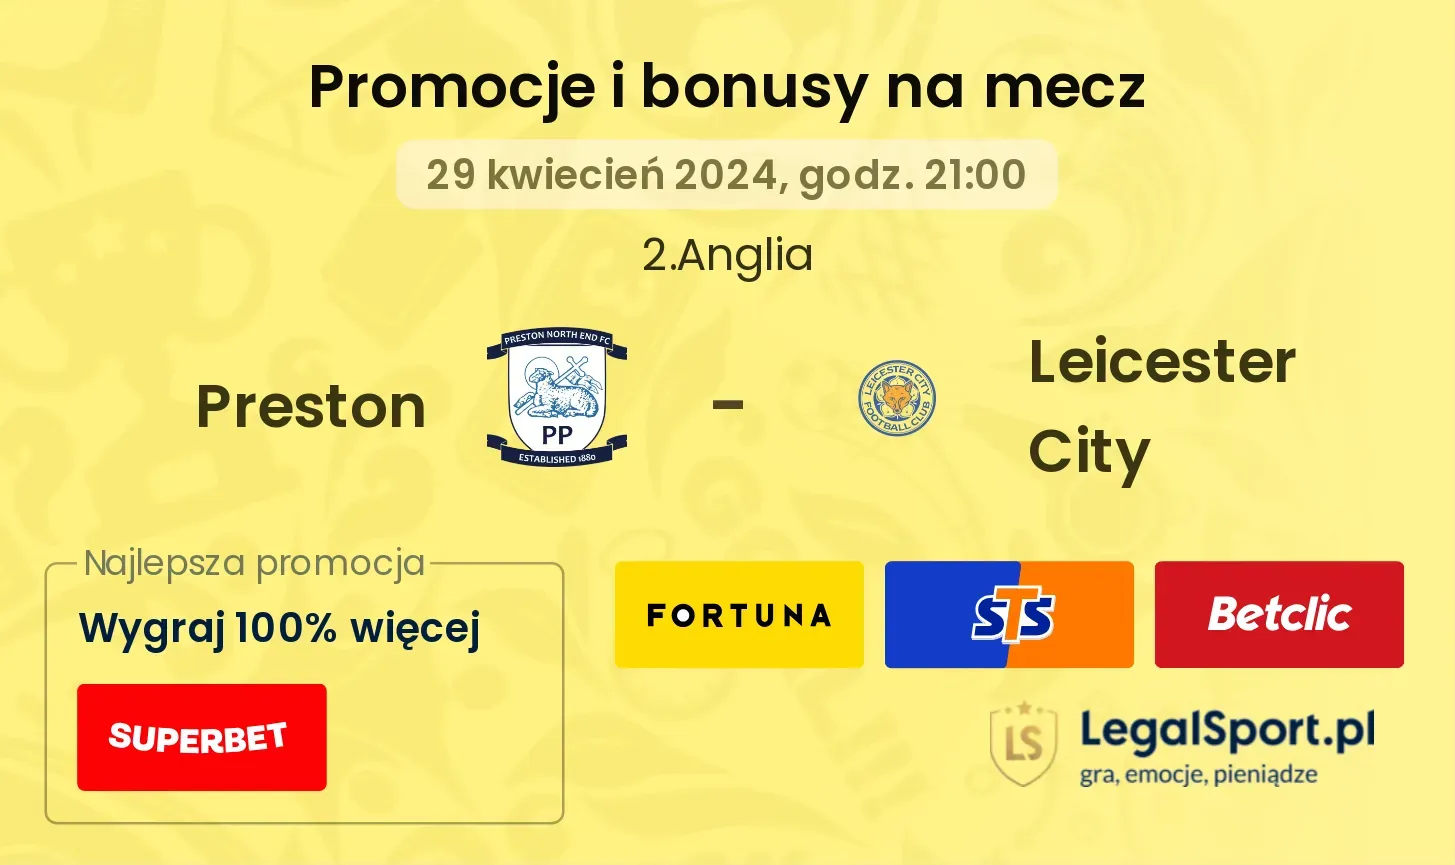 Preston - Leicester City promocje bonusy na mecz